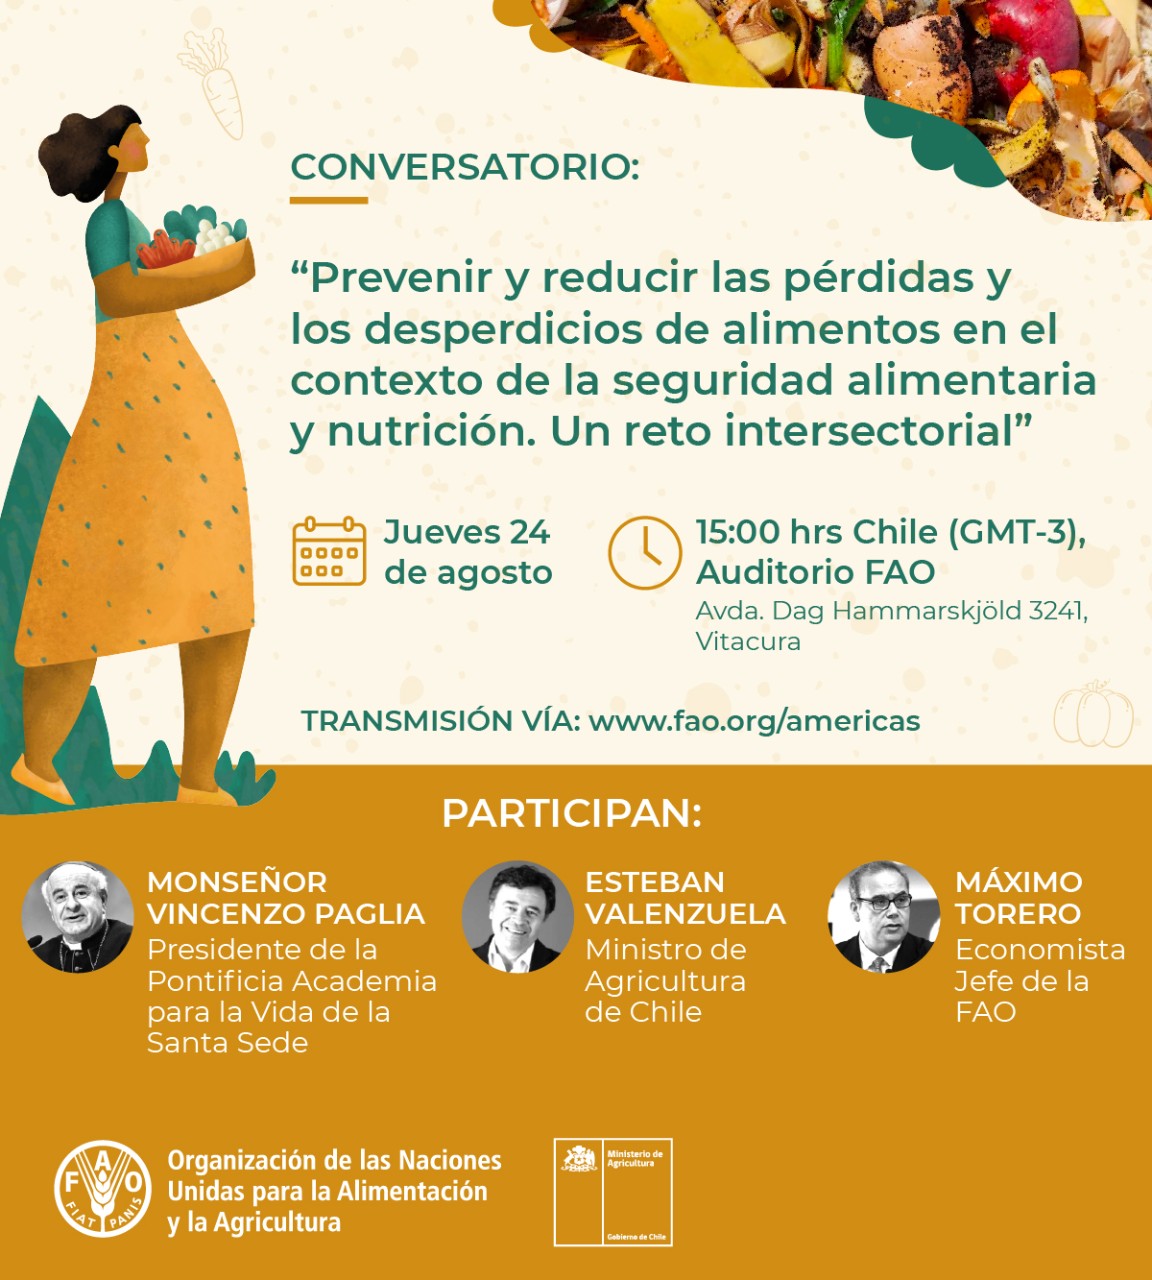 FAO_ Flyer - Conversatorio prevenir y reducir las perdidas y los desperdicios de alimentos en el contexto de la Seguridad Alimentaria y Nutriconal. Un reto intersectorial